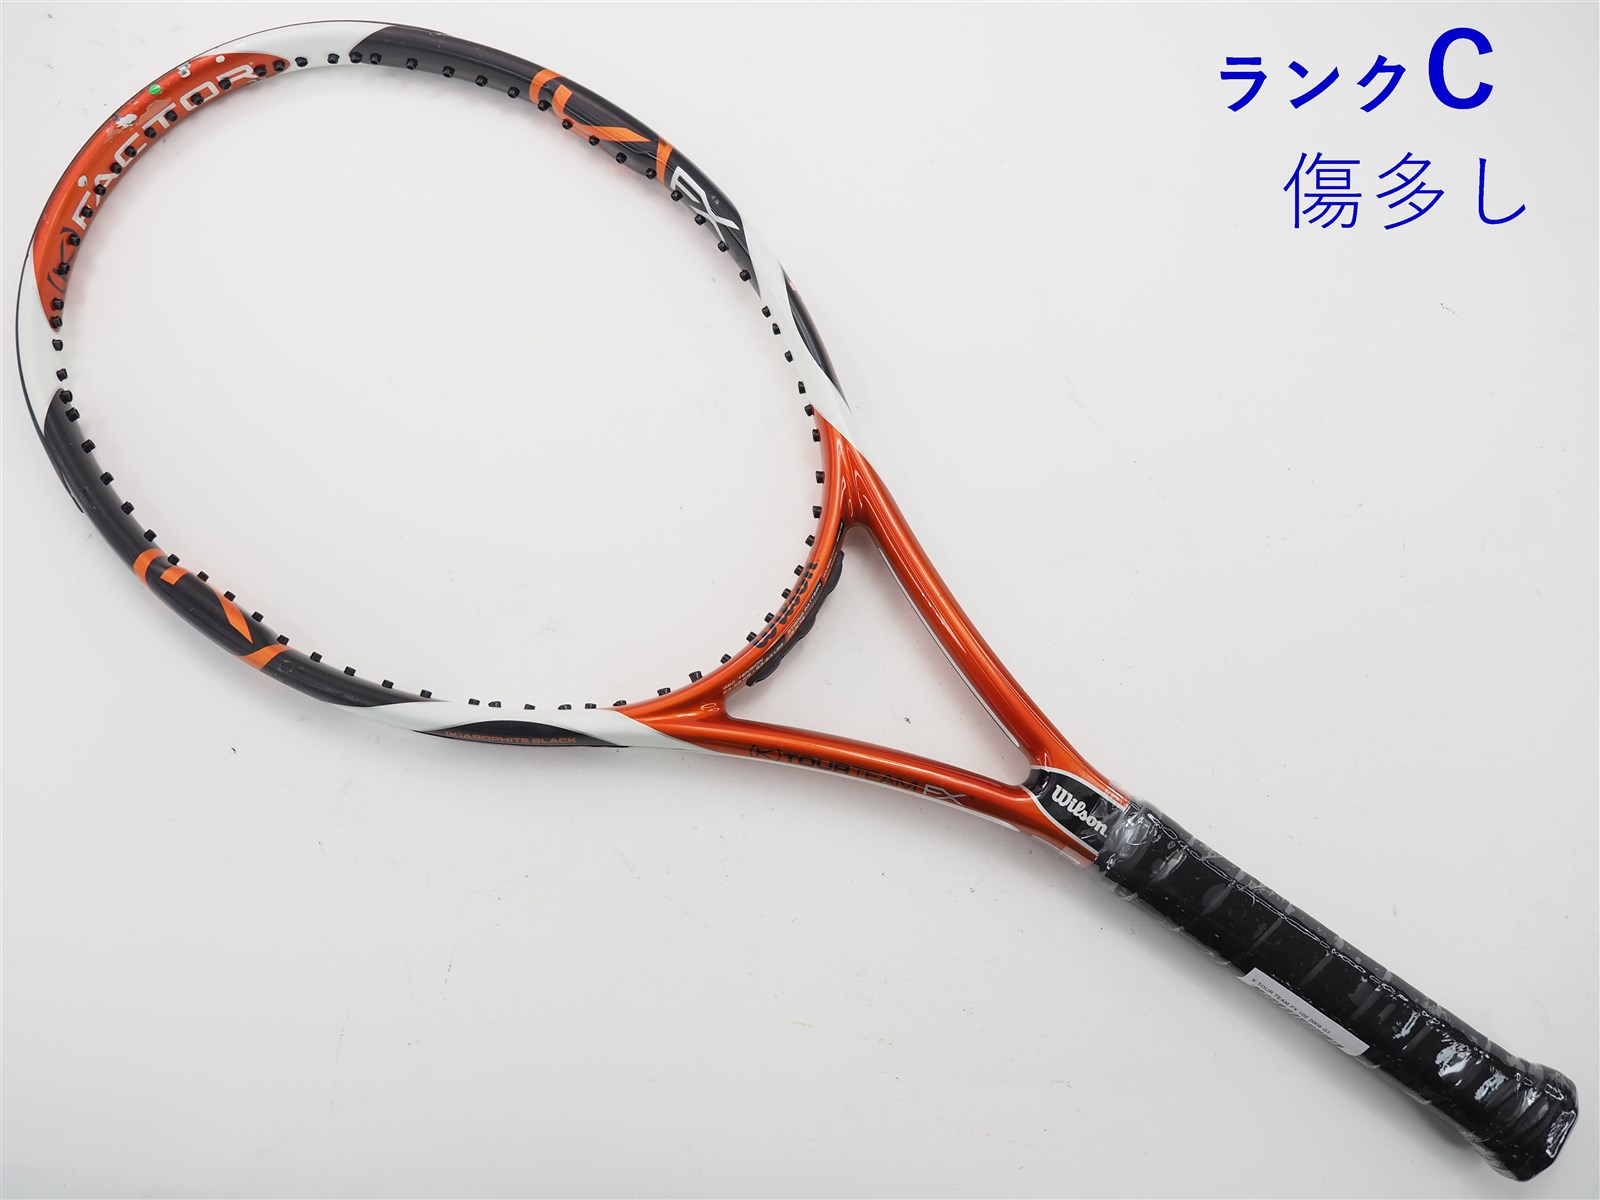 テニスラケット ウィルソン K シックスワン ライト 102 2007年モデル